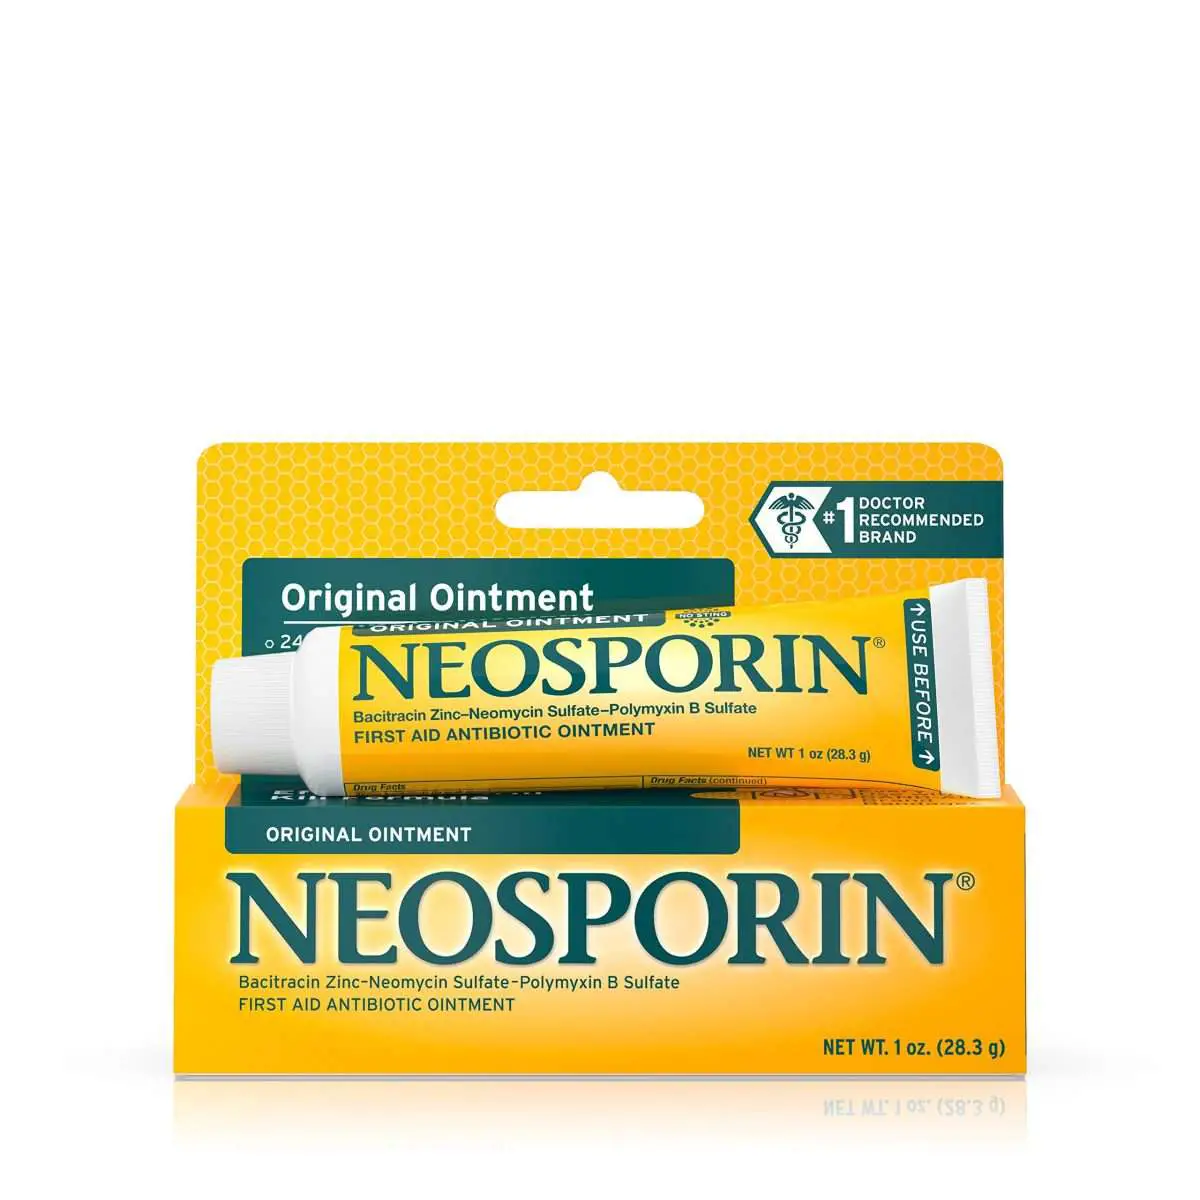 Neosporin Original Antibiotic Ointment, 24